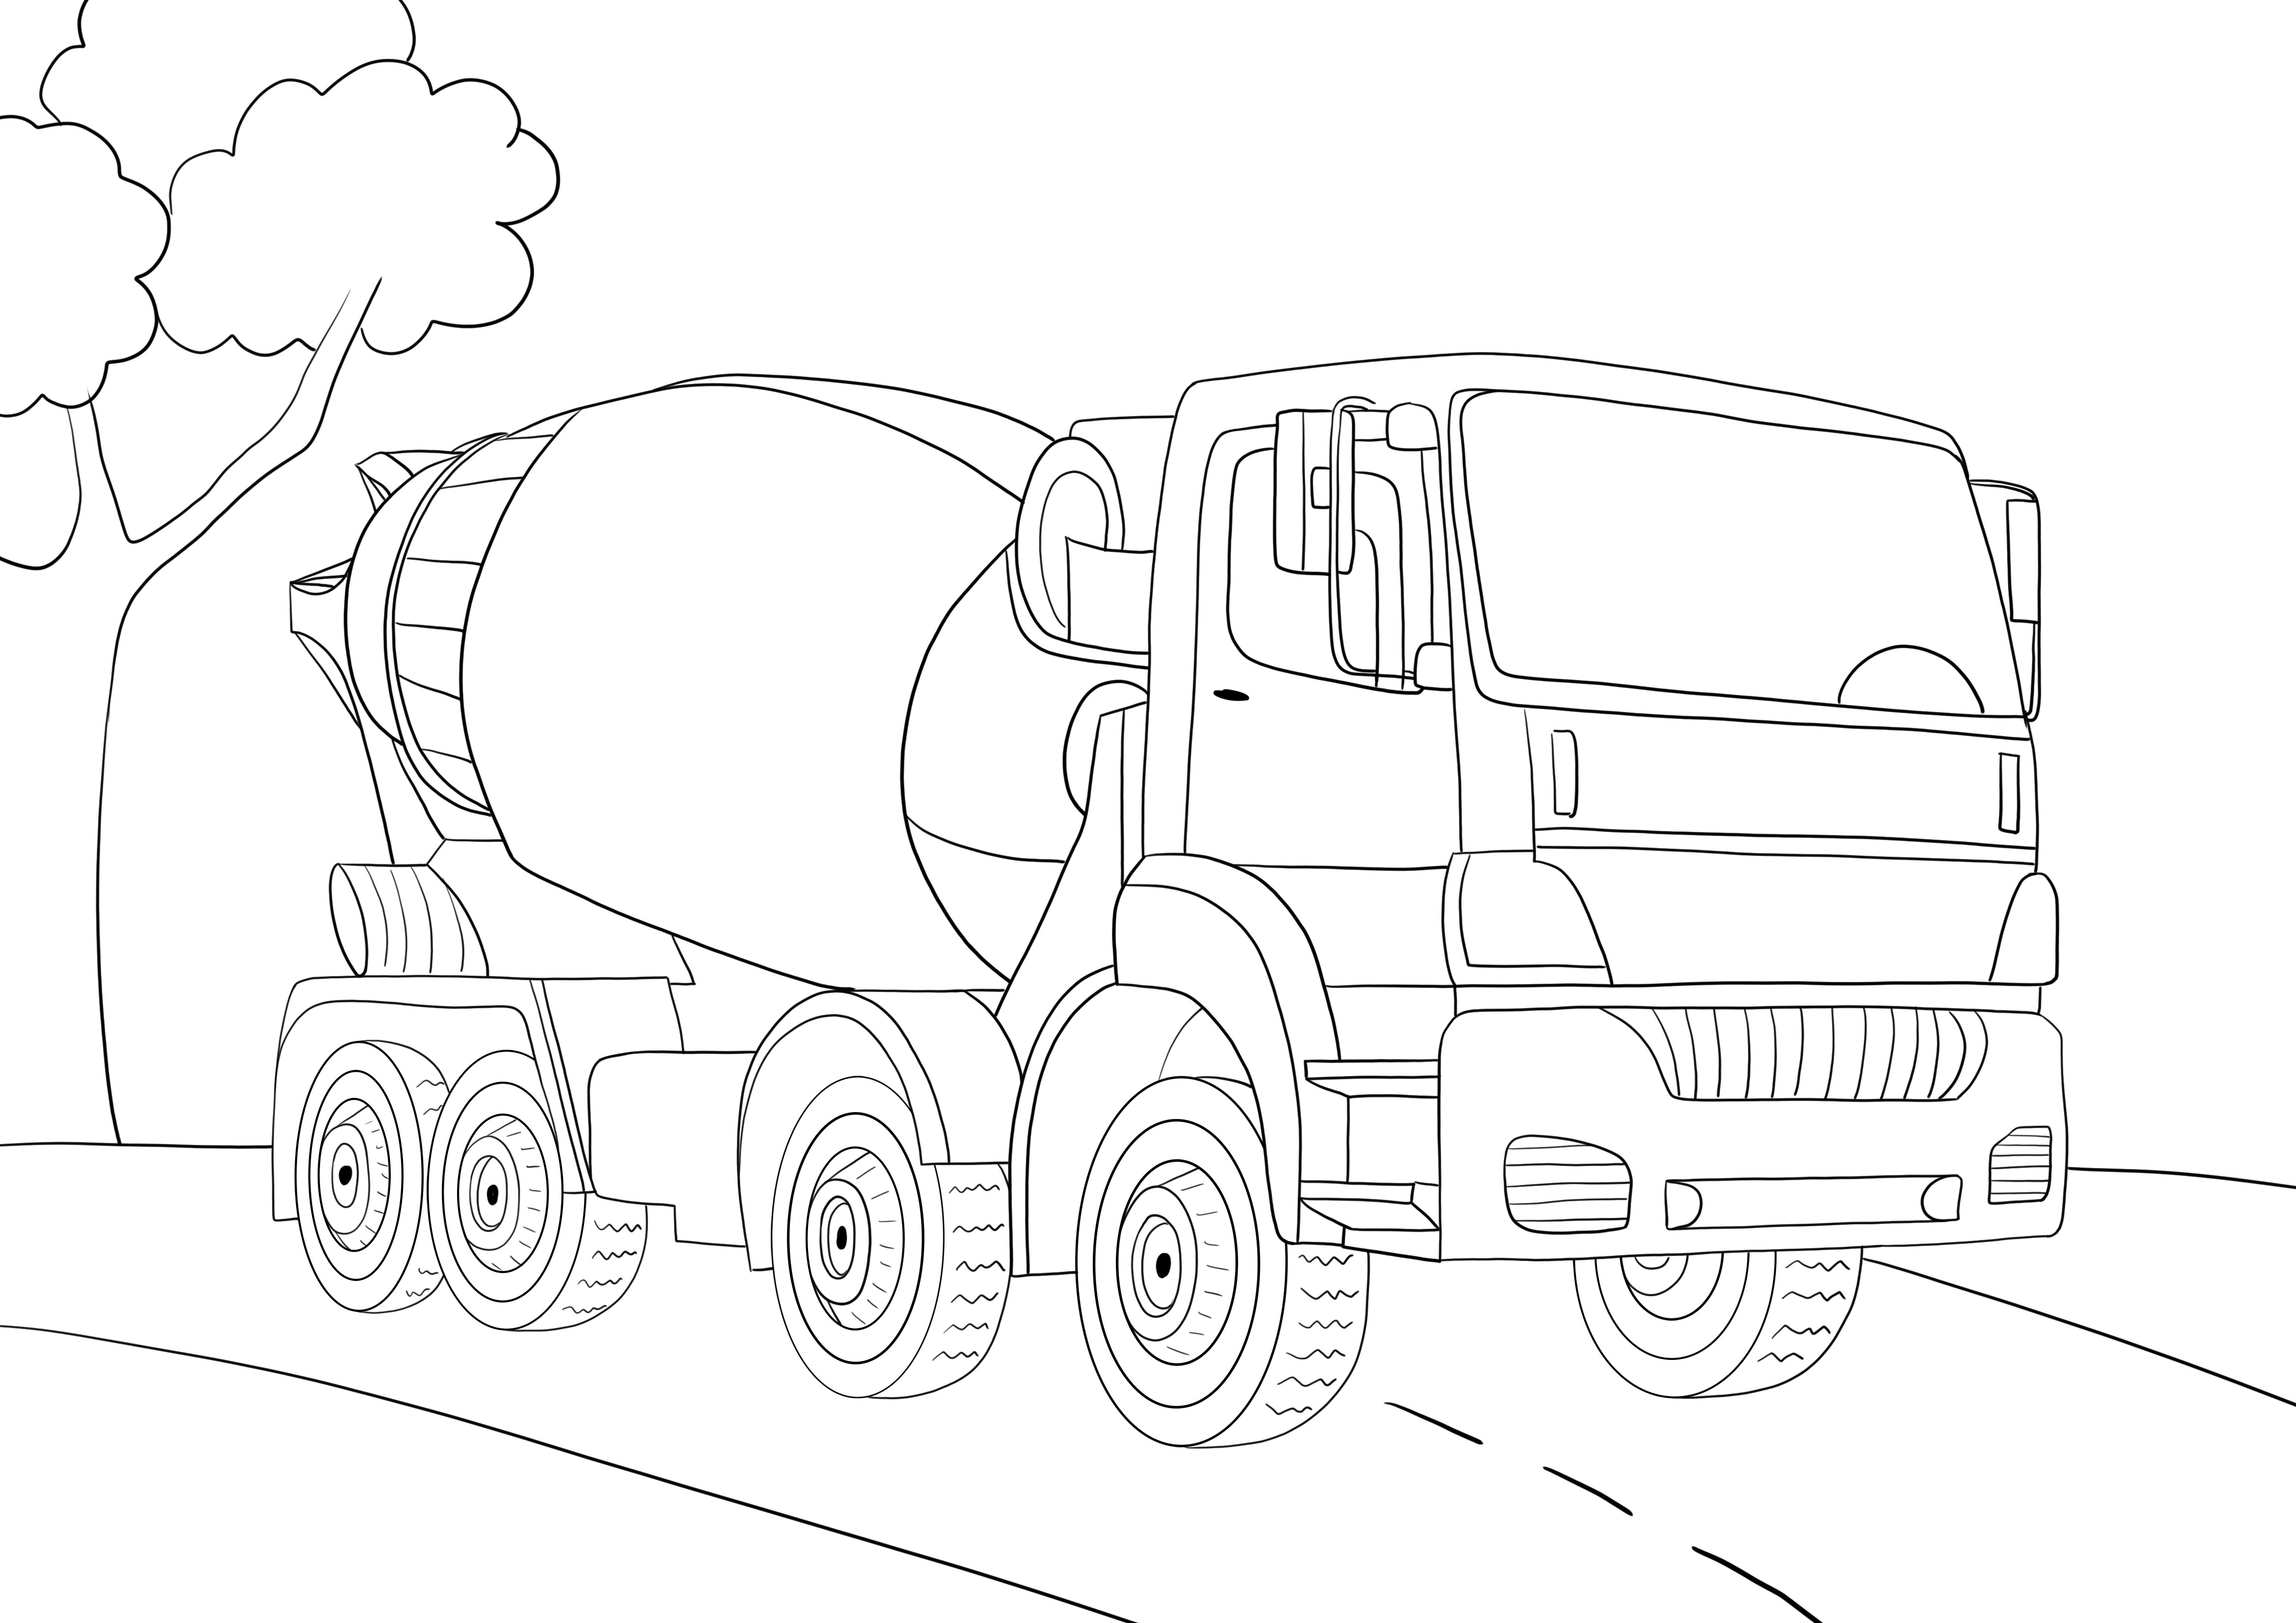 Çocukların boyaması için çimento kamyonu ücretsiz yazdırılabilir sayfa